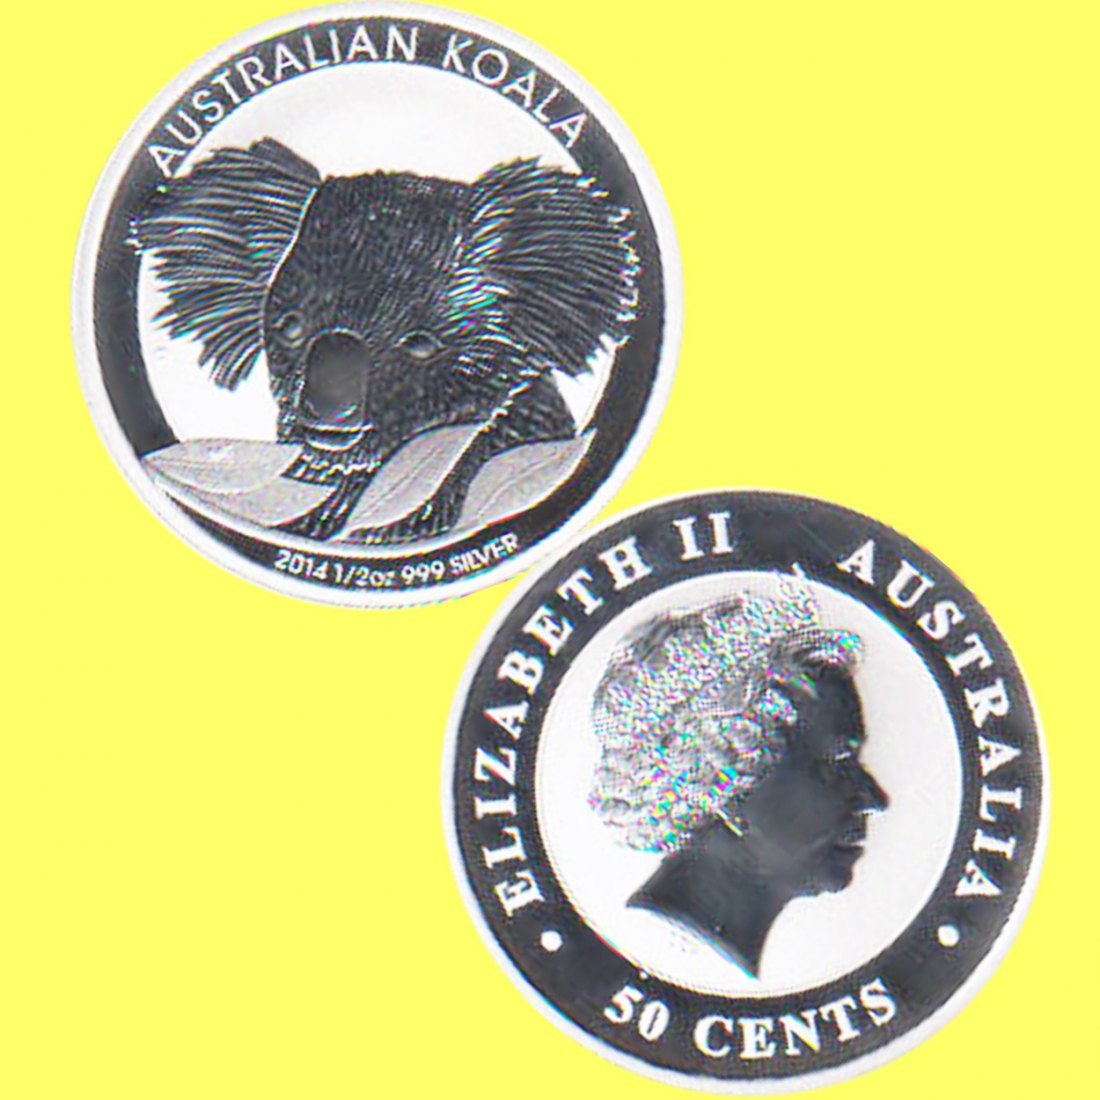  Australien 50 Cent Silbermünze *Koala* 2014 1/2oz Silber   